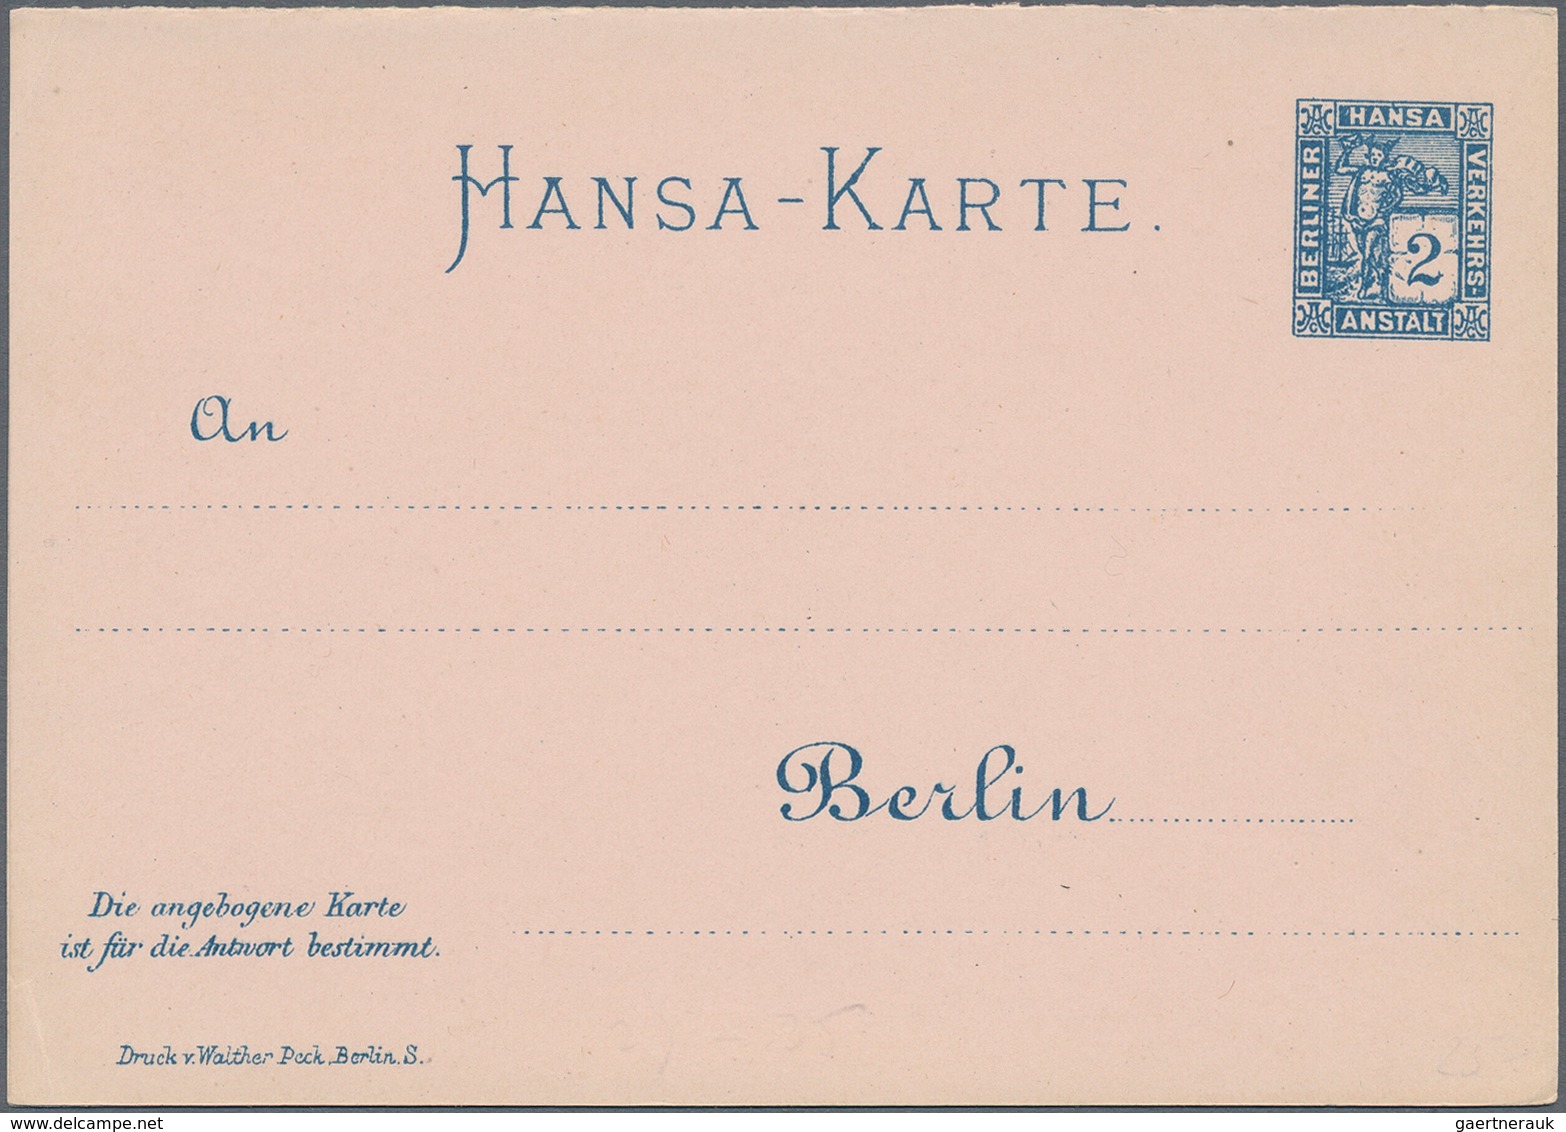 Deutsches Reich - Privatpost (Stadtpost): 1890er, vielseitige Partie von über 300 meist ungebrauchte